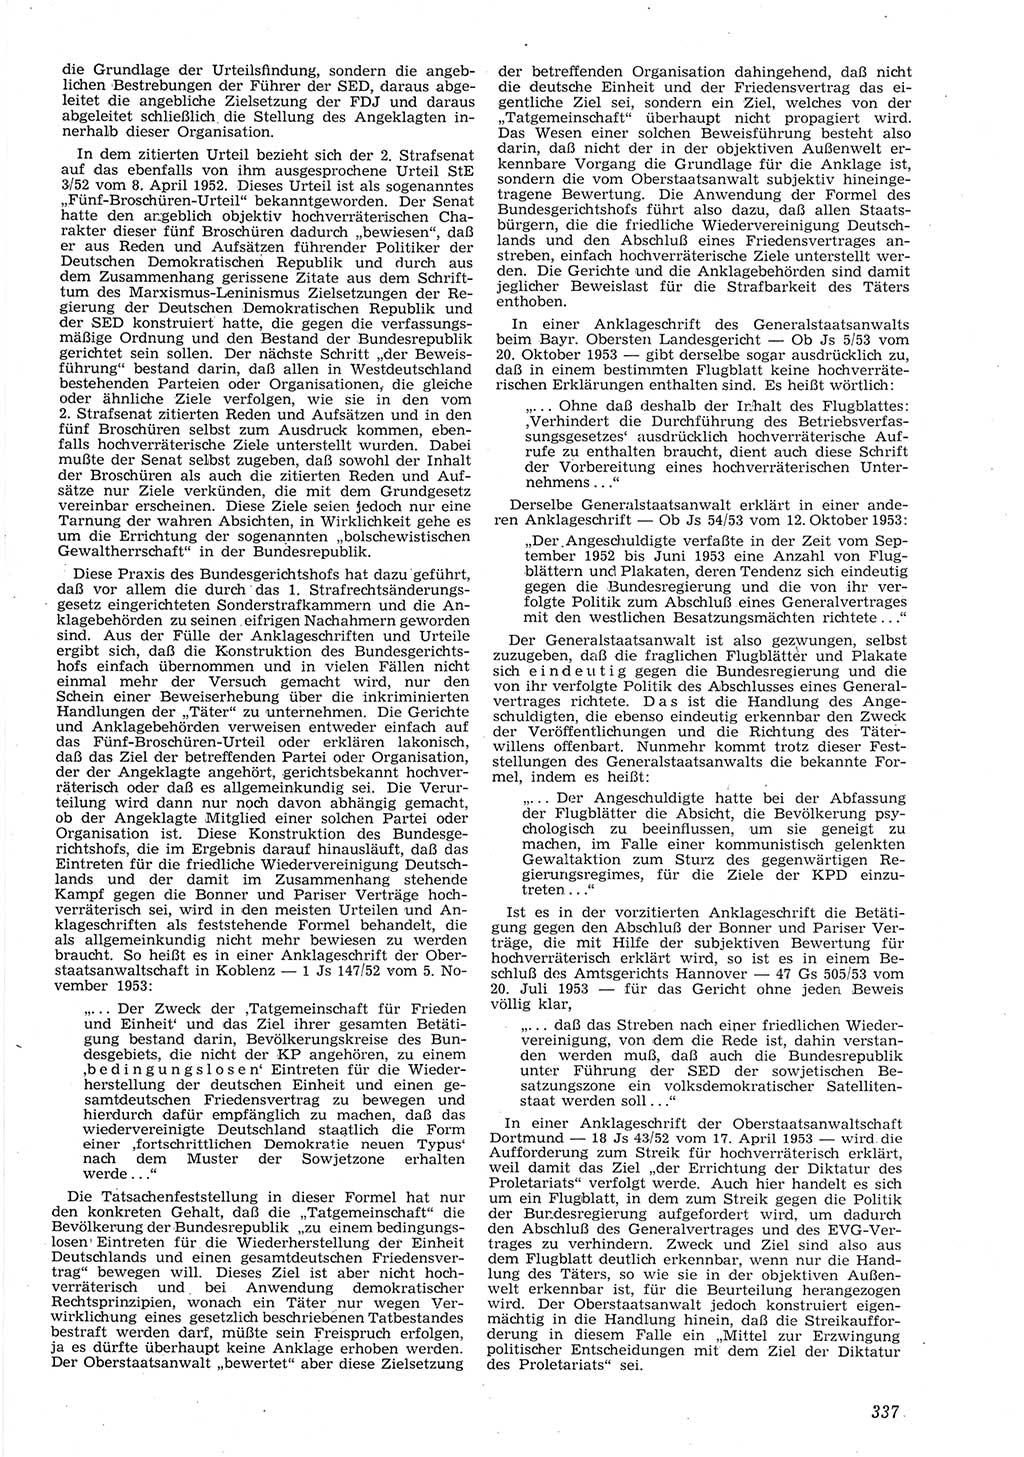 Neue Justiz (NJ), Zeitschrift für Recht und Rechtswissenschaft [Deutsche Demokratische Republik (DDR)], 8. Jahrgang 1954, Seite 337 (NJ DDR 1954, S. 337)